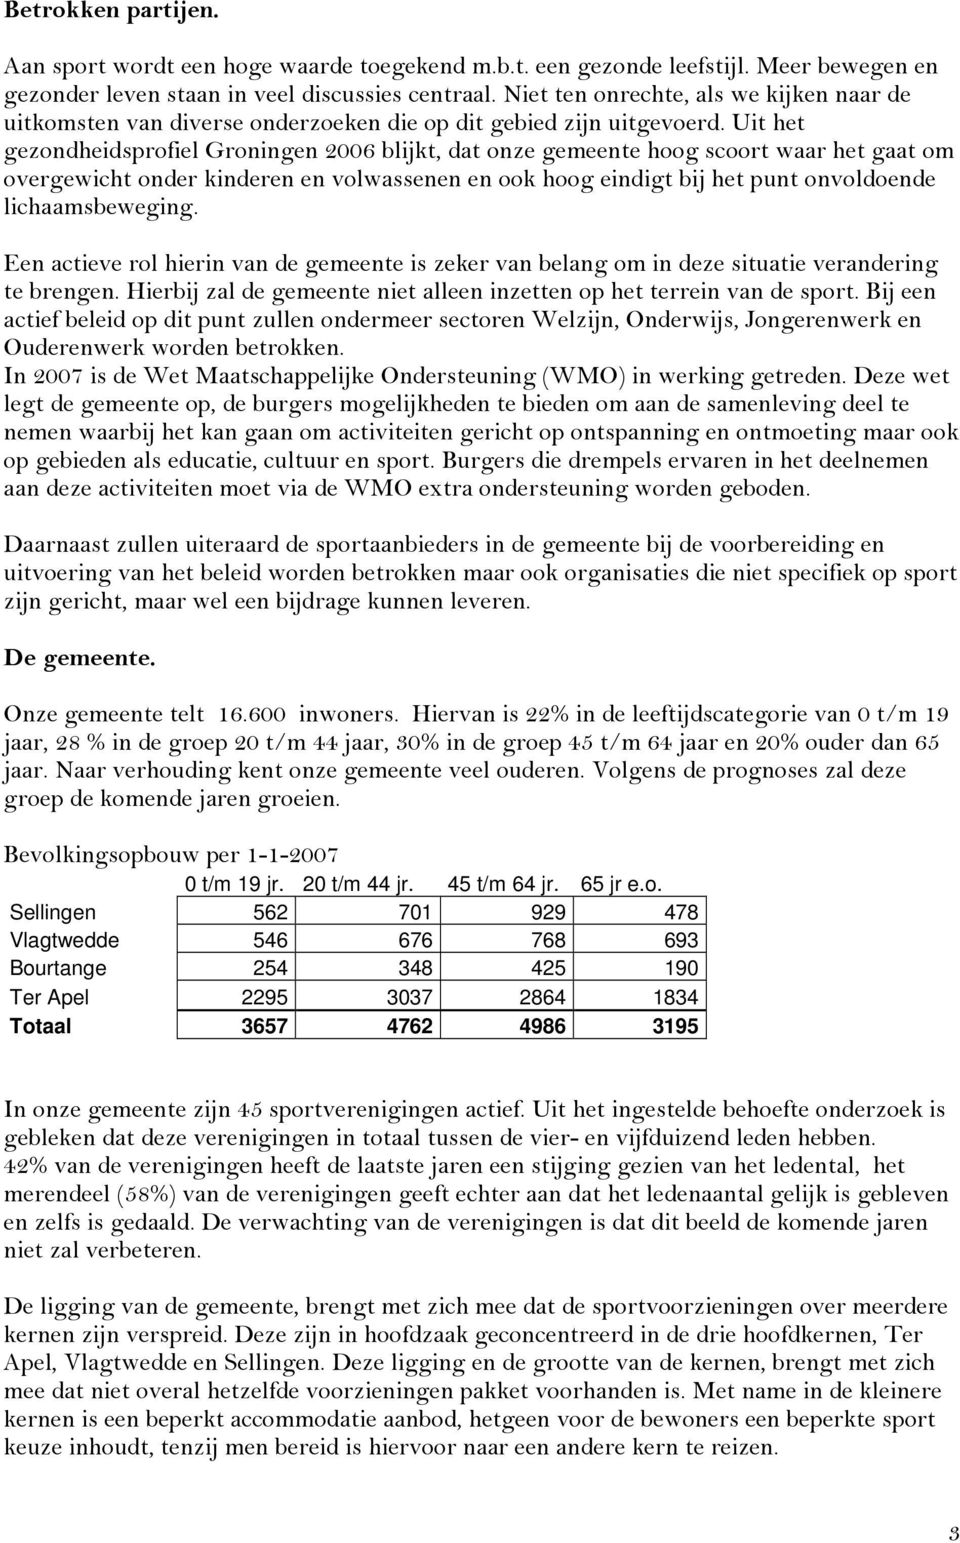 Uit het gezondheidsprofiel Groningen 2006 blijkt, dat onze gemeente hoog scoort waar het gaat om overgewicht onder kinderen en volwassenen en ook hoog eindigt bij het punt onvoldoende